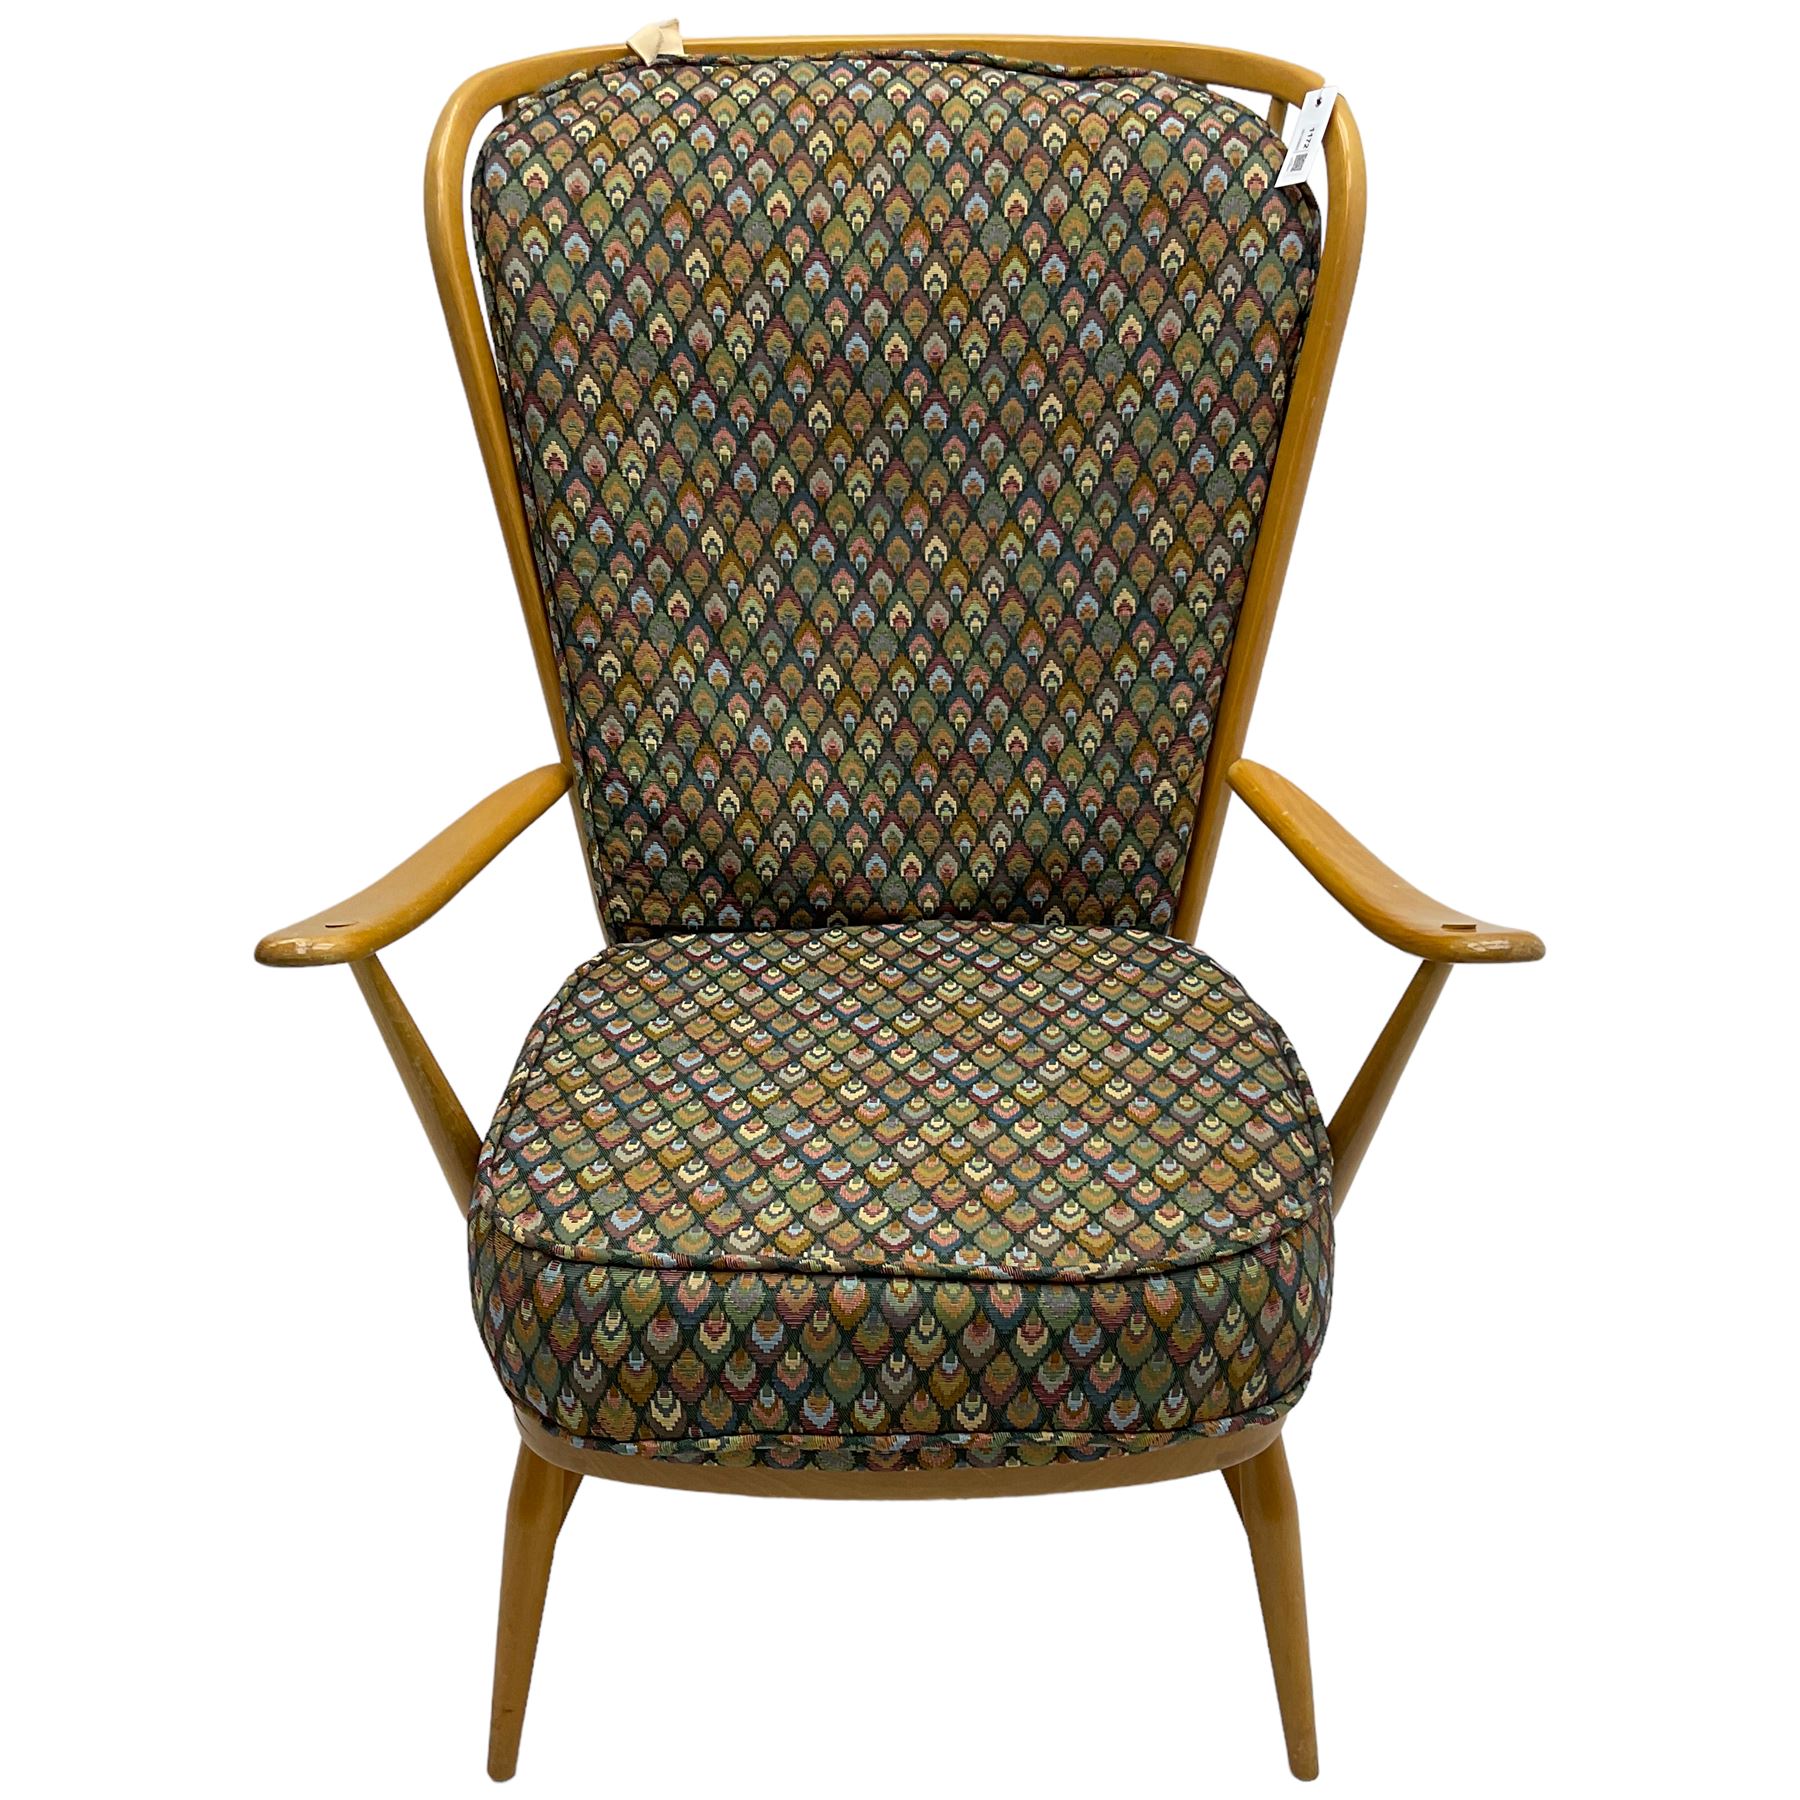 Ercol - light beech framed high-back 'Windsor' easy chair - Image 5 of 7